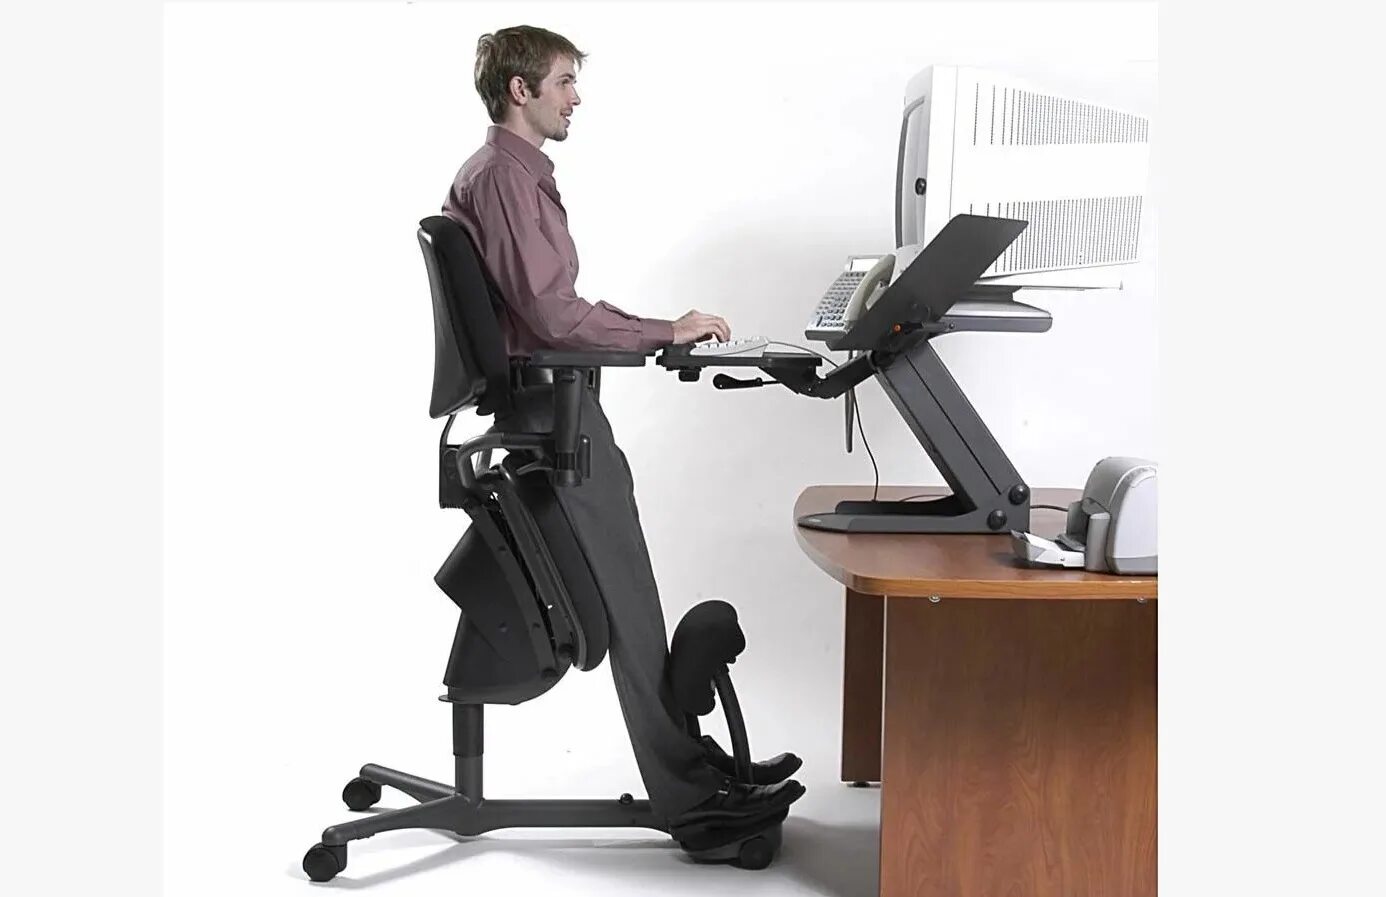 Стул для стоячих рабочих мест. Стоячее кресло для офиса. Эргономичный компьютерный стол. Удобное кресло для сидения за компьютером..